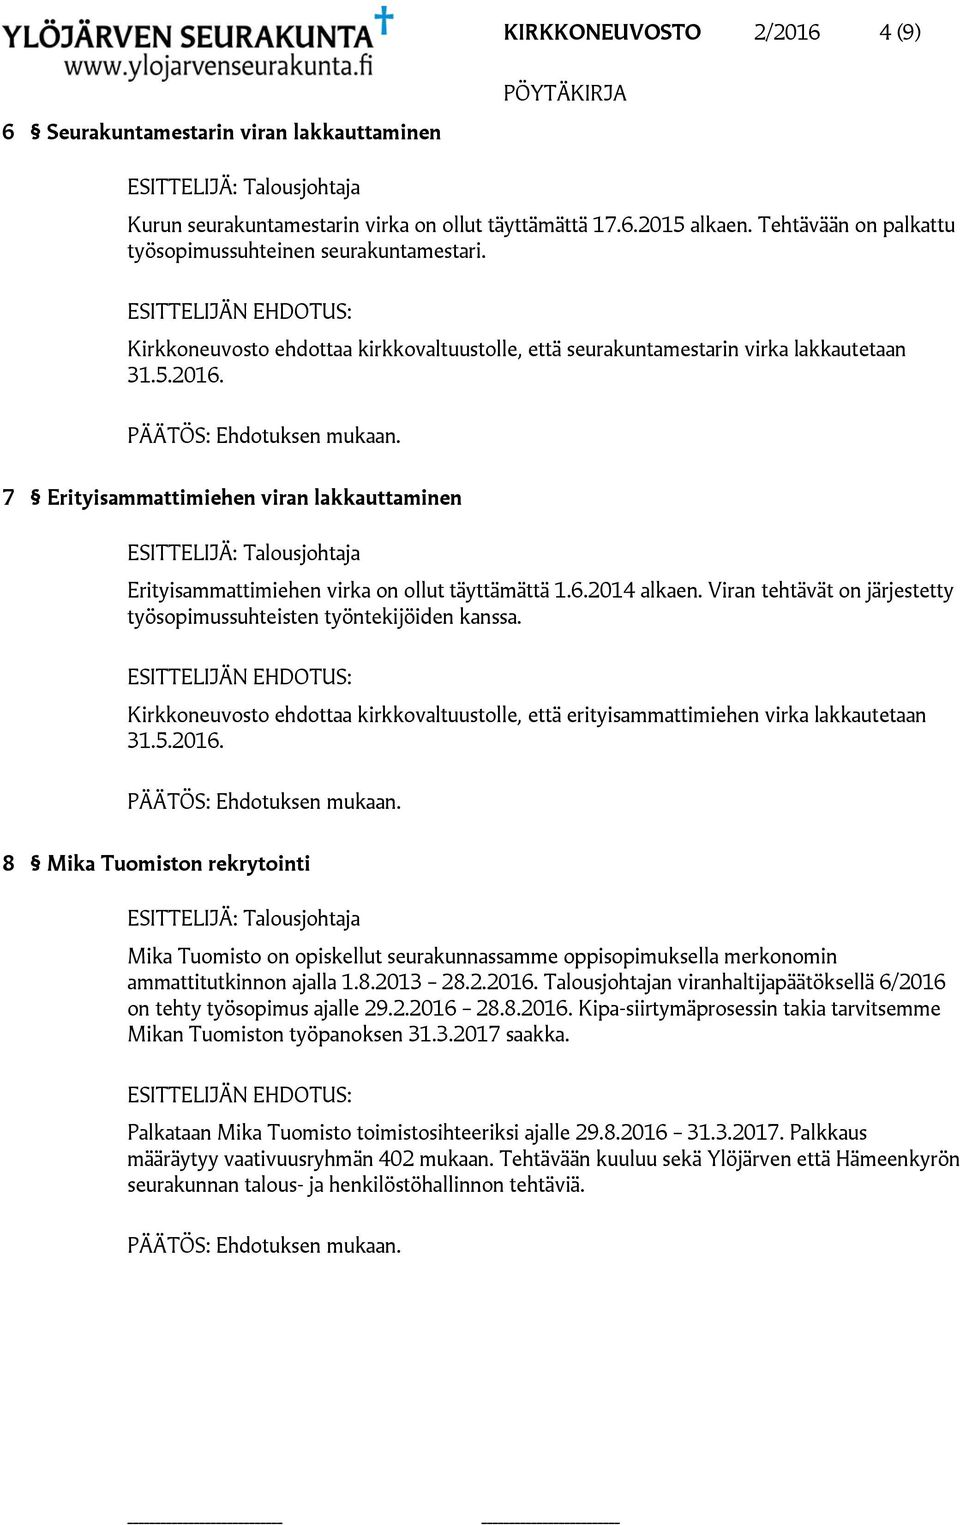 7 Erityisammattimiehen viran lakkauttaminen ESITTELIJÄ: Talousjohtaja Erityisammattimiehen virka on ollut täyttämättä 1.6.2014 alkaen.